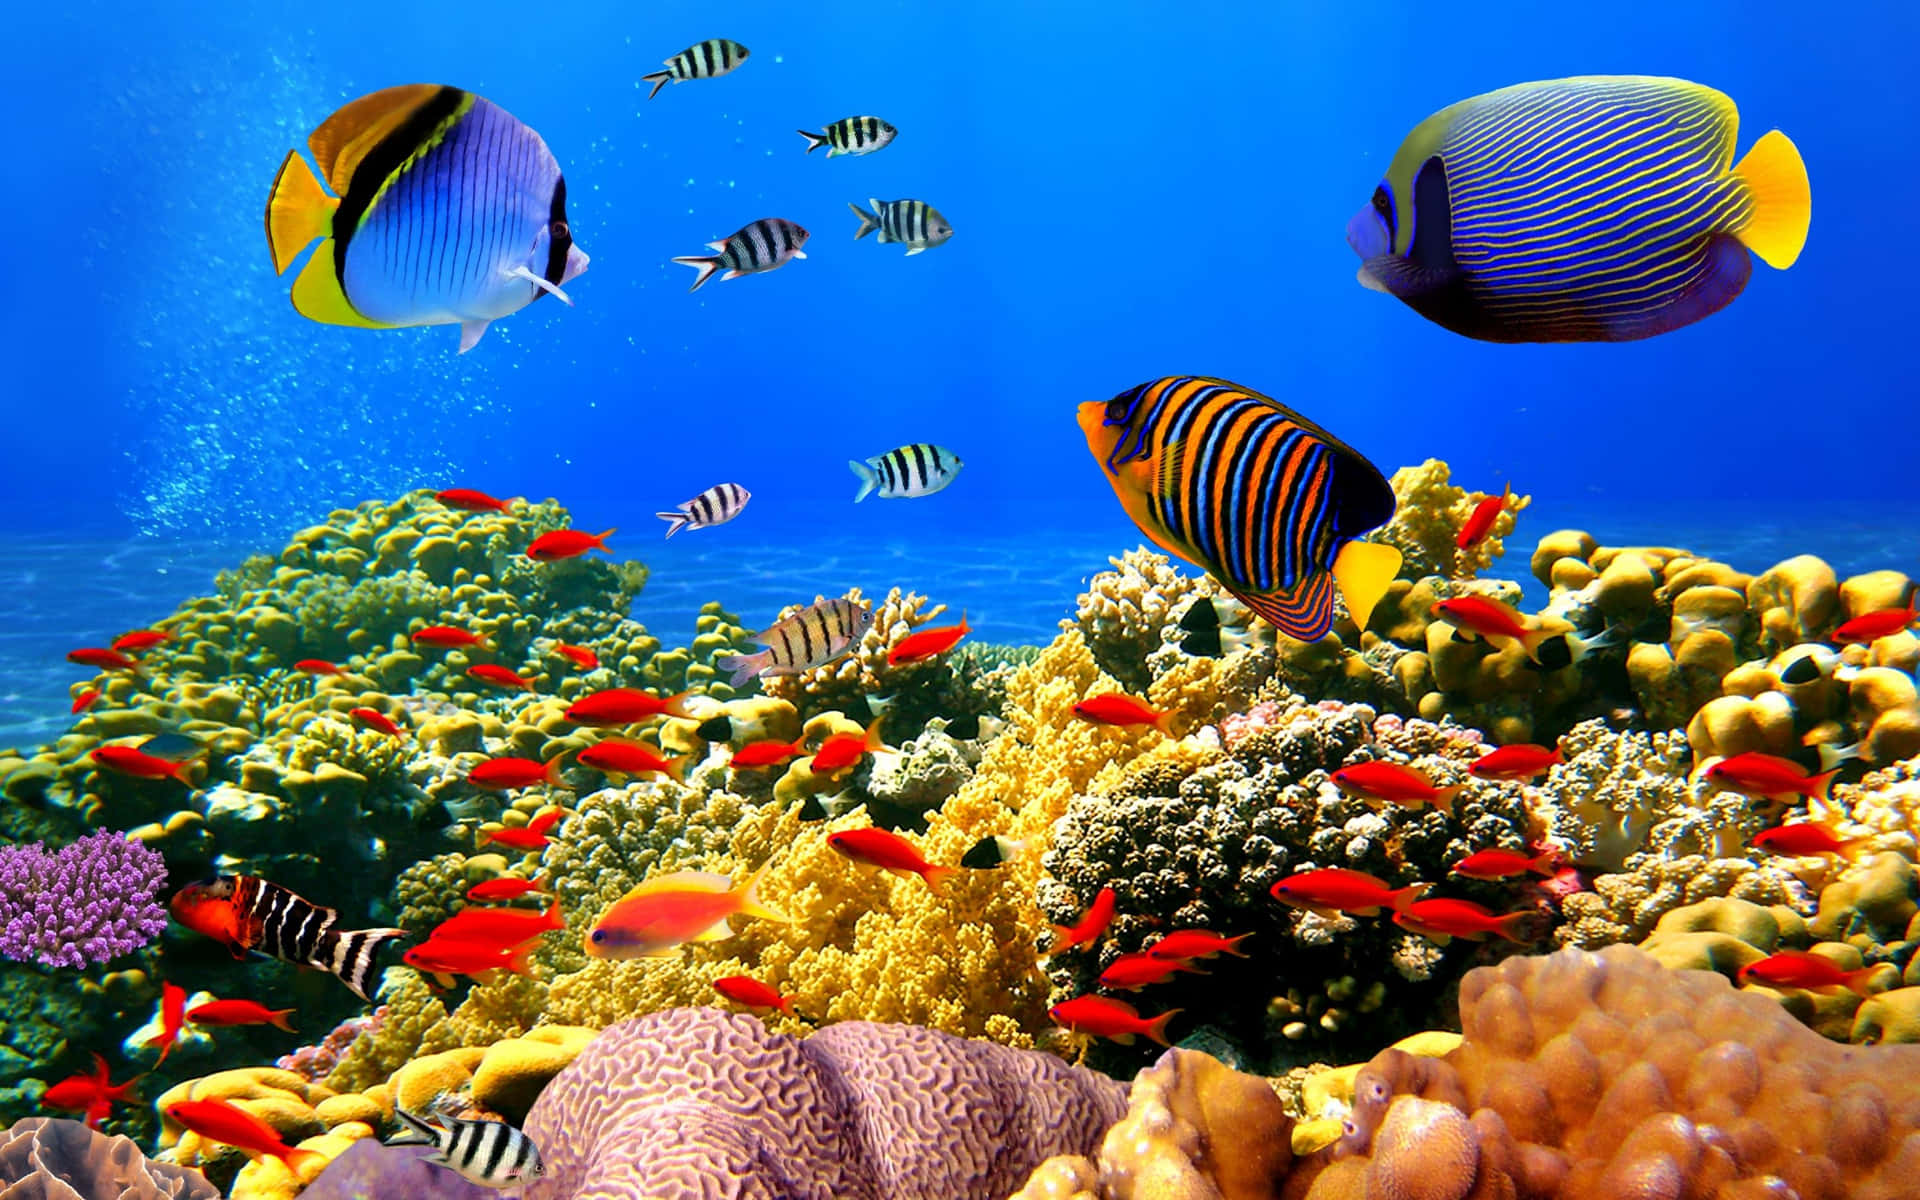 Unaffascinante Assortimento Di Coralli, Pesci E Altre Forme Di Vita Marine, Rinvenuto In Un Vibrante E Colorato Ecosistema Di Barriere Coralline.